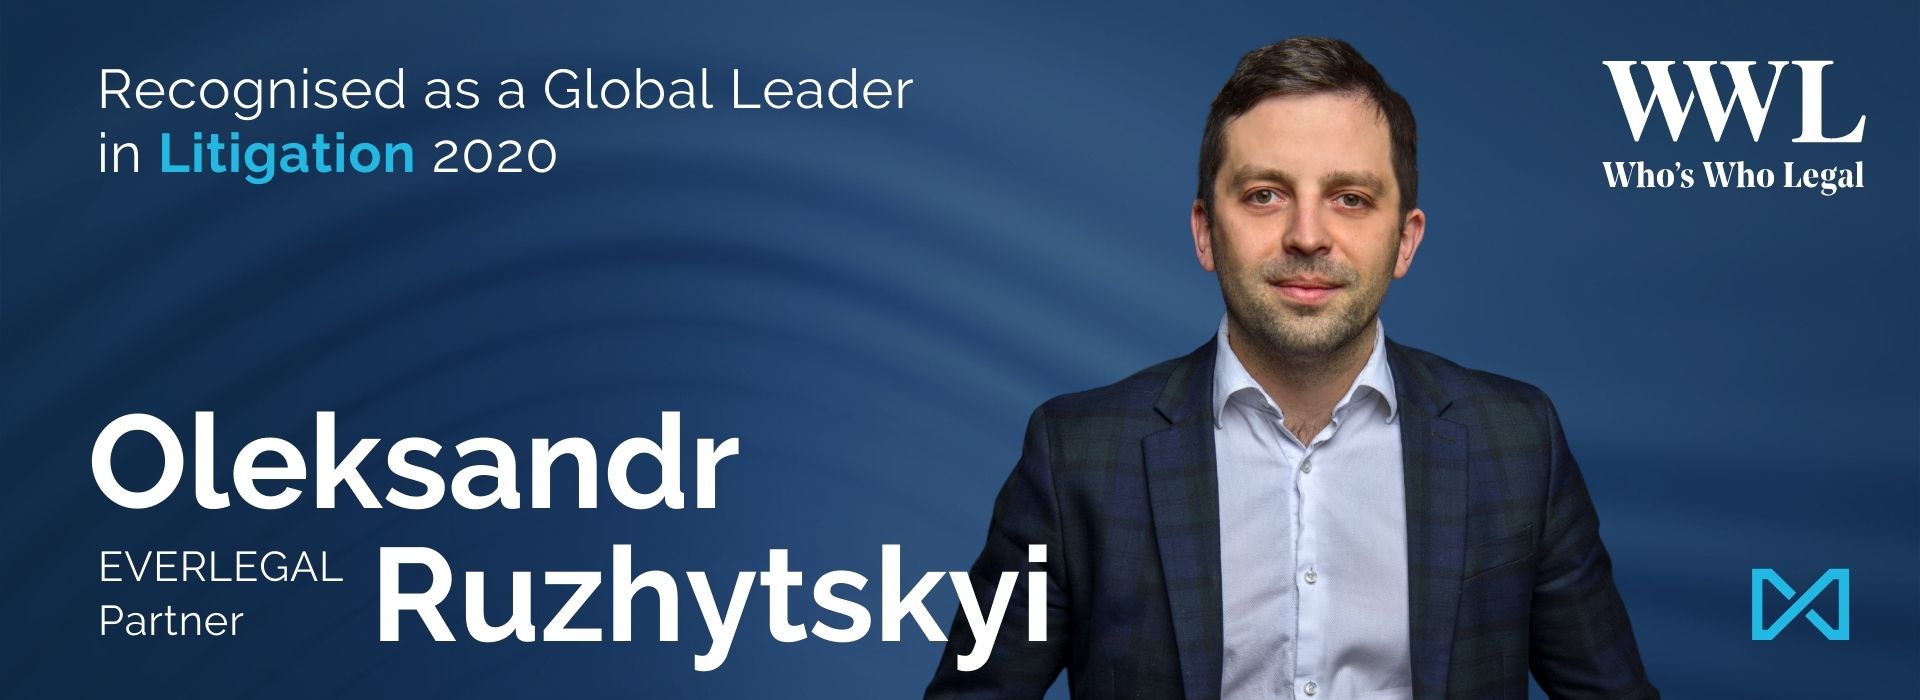 Oleksandr Ruzhytskyi Is Recognised as a Global Leader in WWL: Litigation